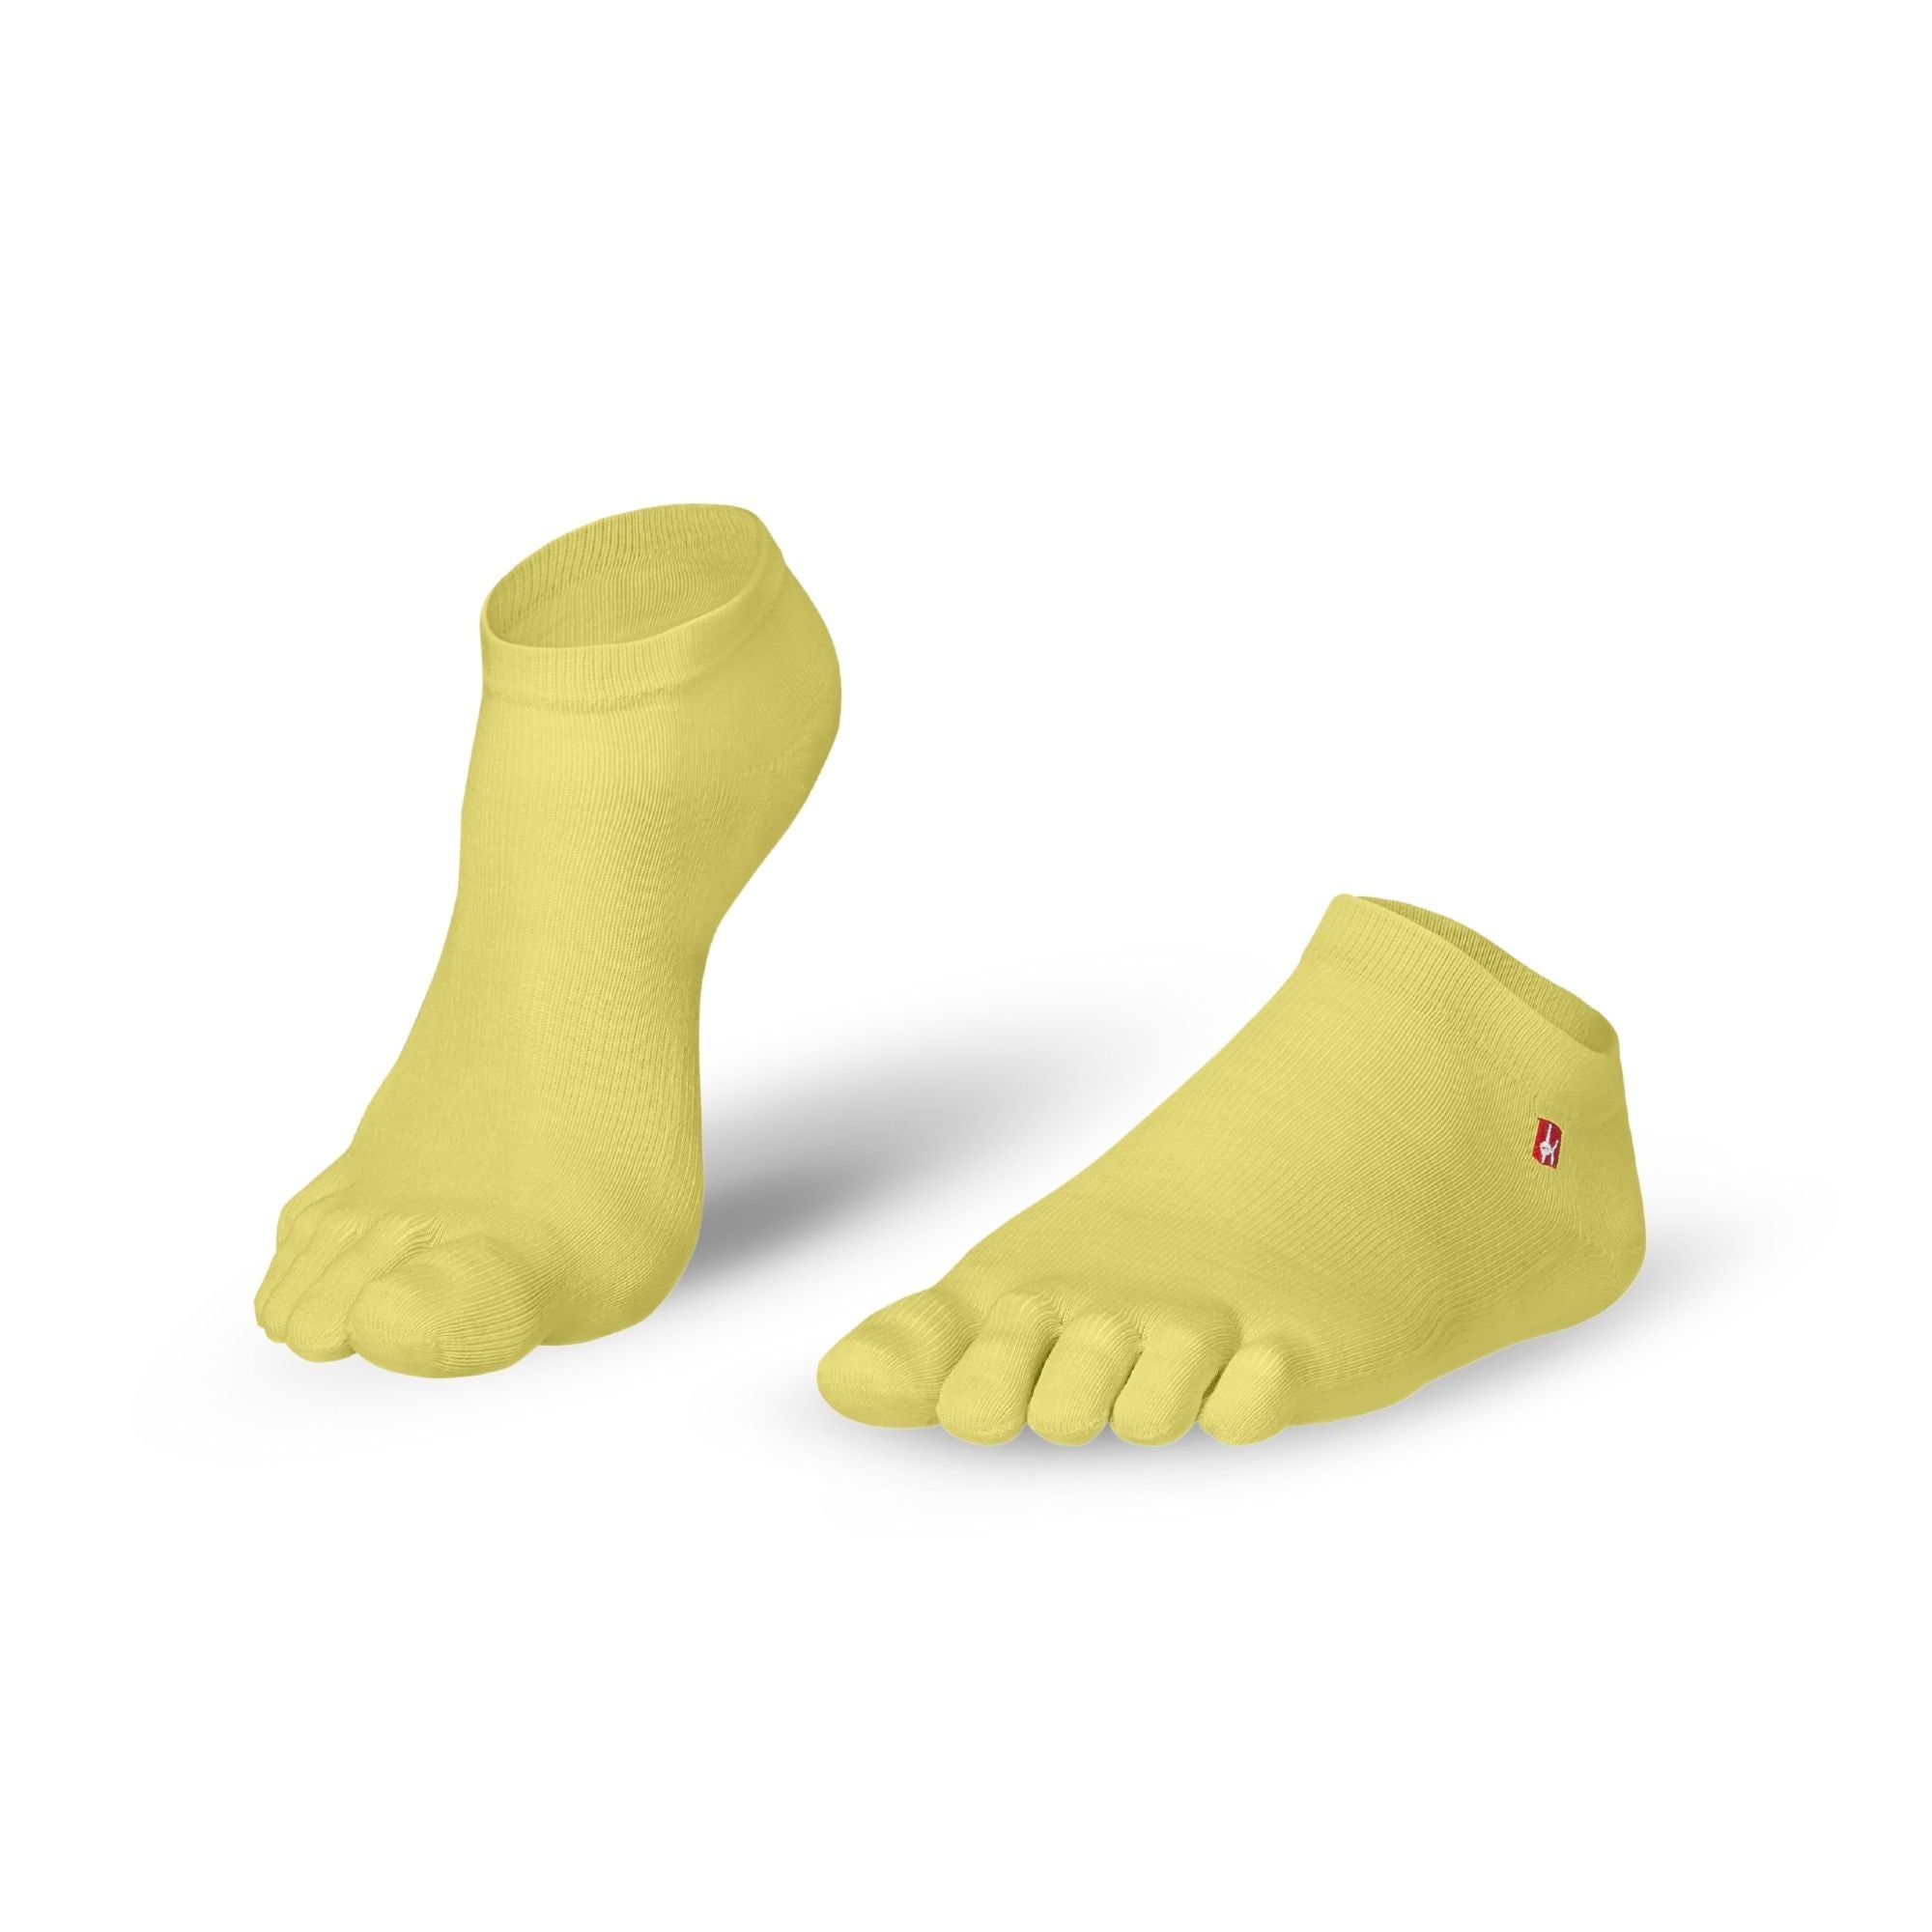 chaussettes à orteils Baskets Coolmax de Knitido Track & Trail ultralite fresh en jaune